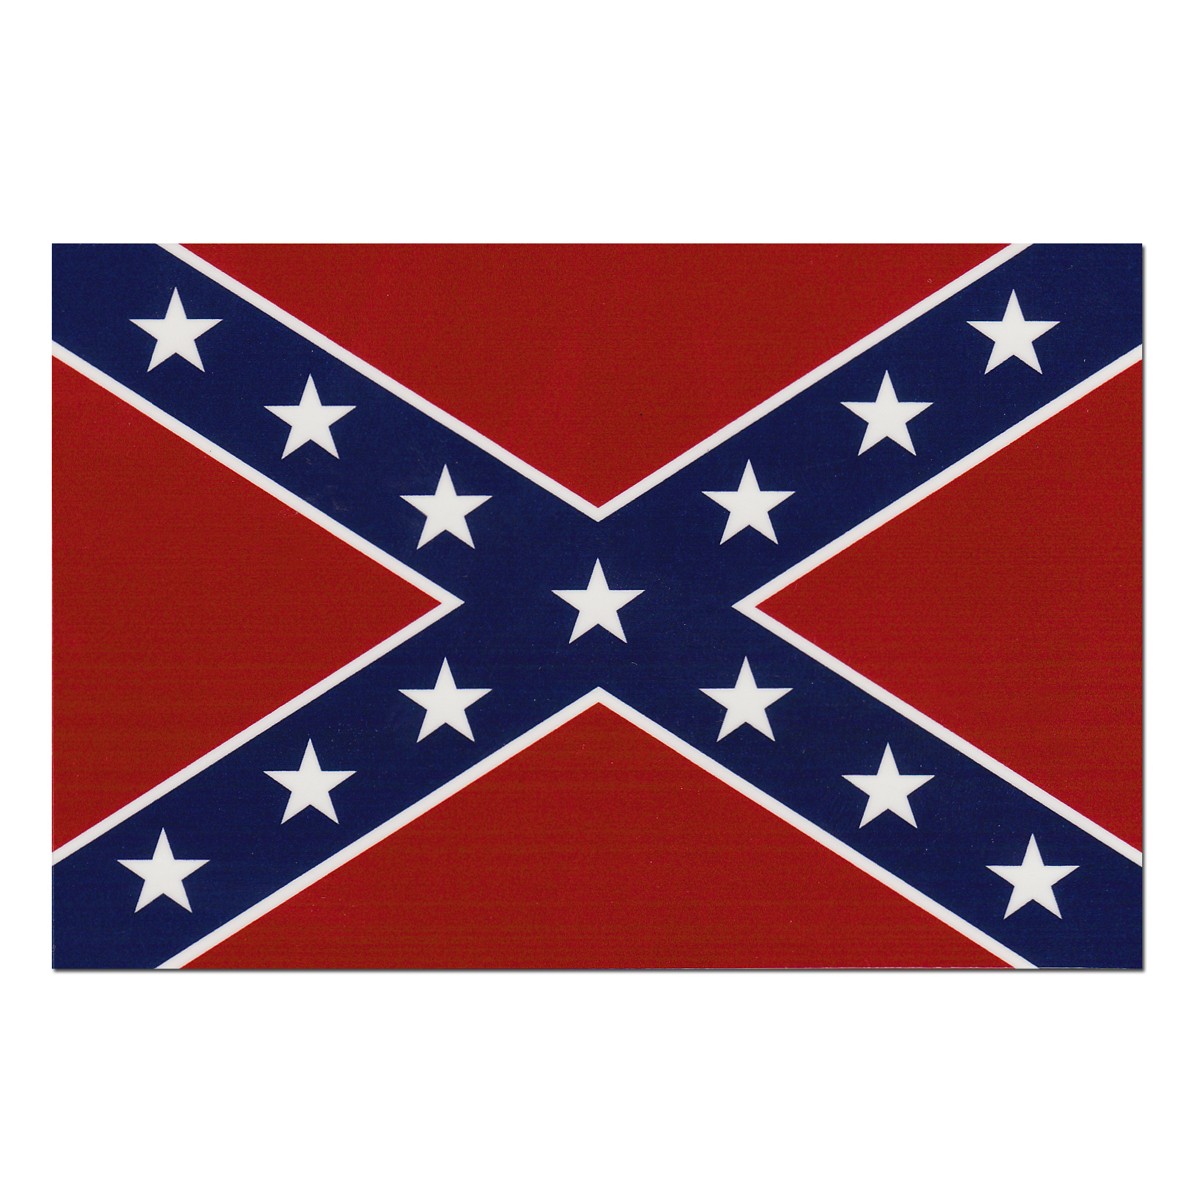 civil war flags clipart - photo #21